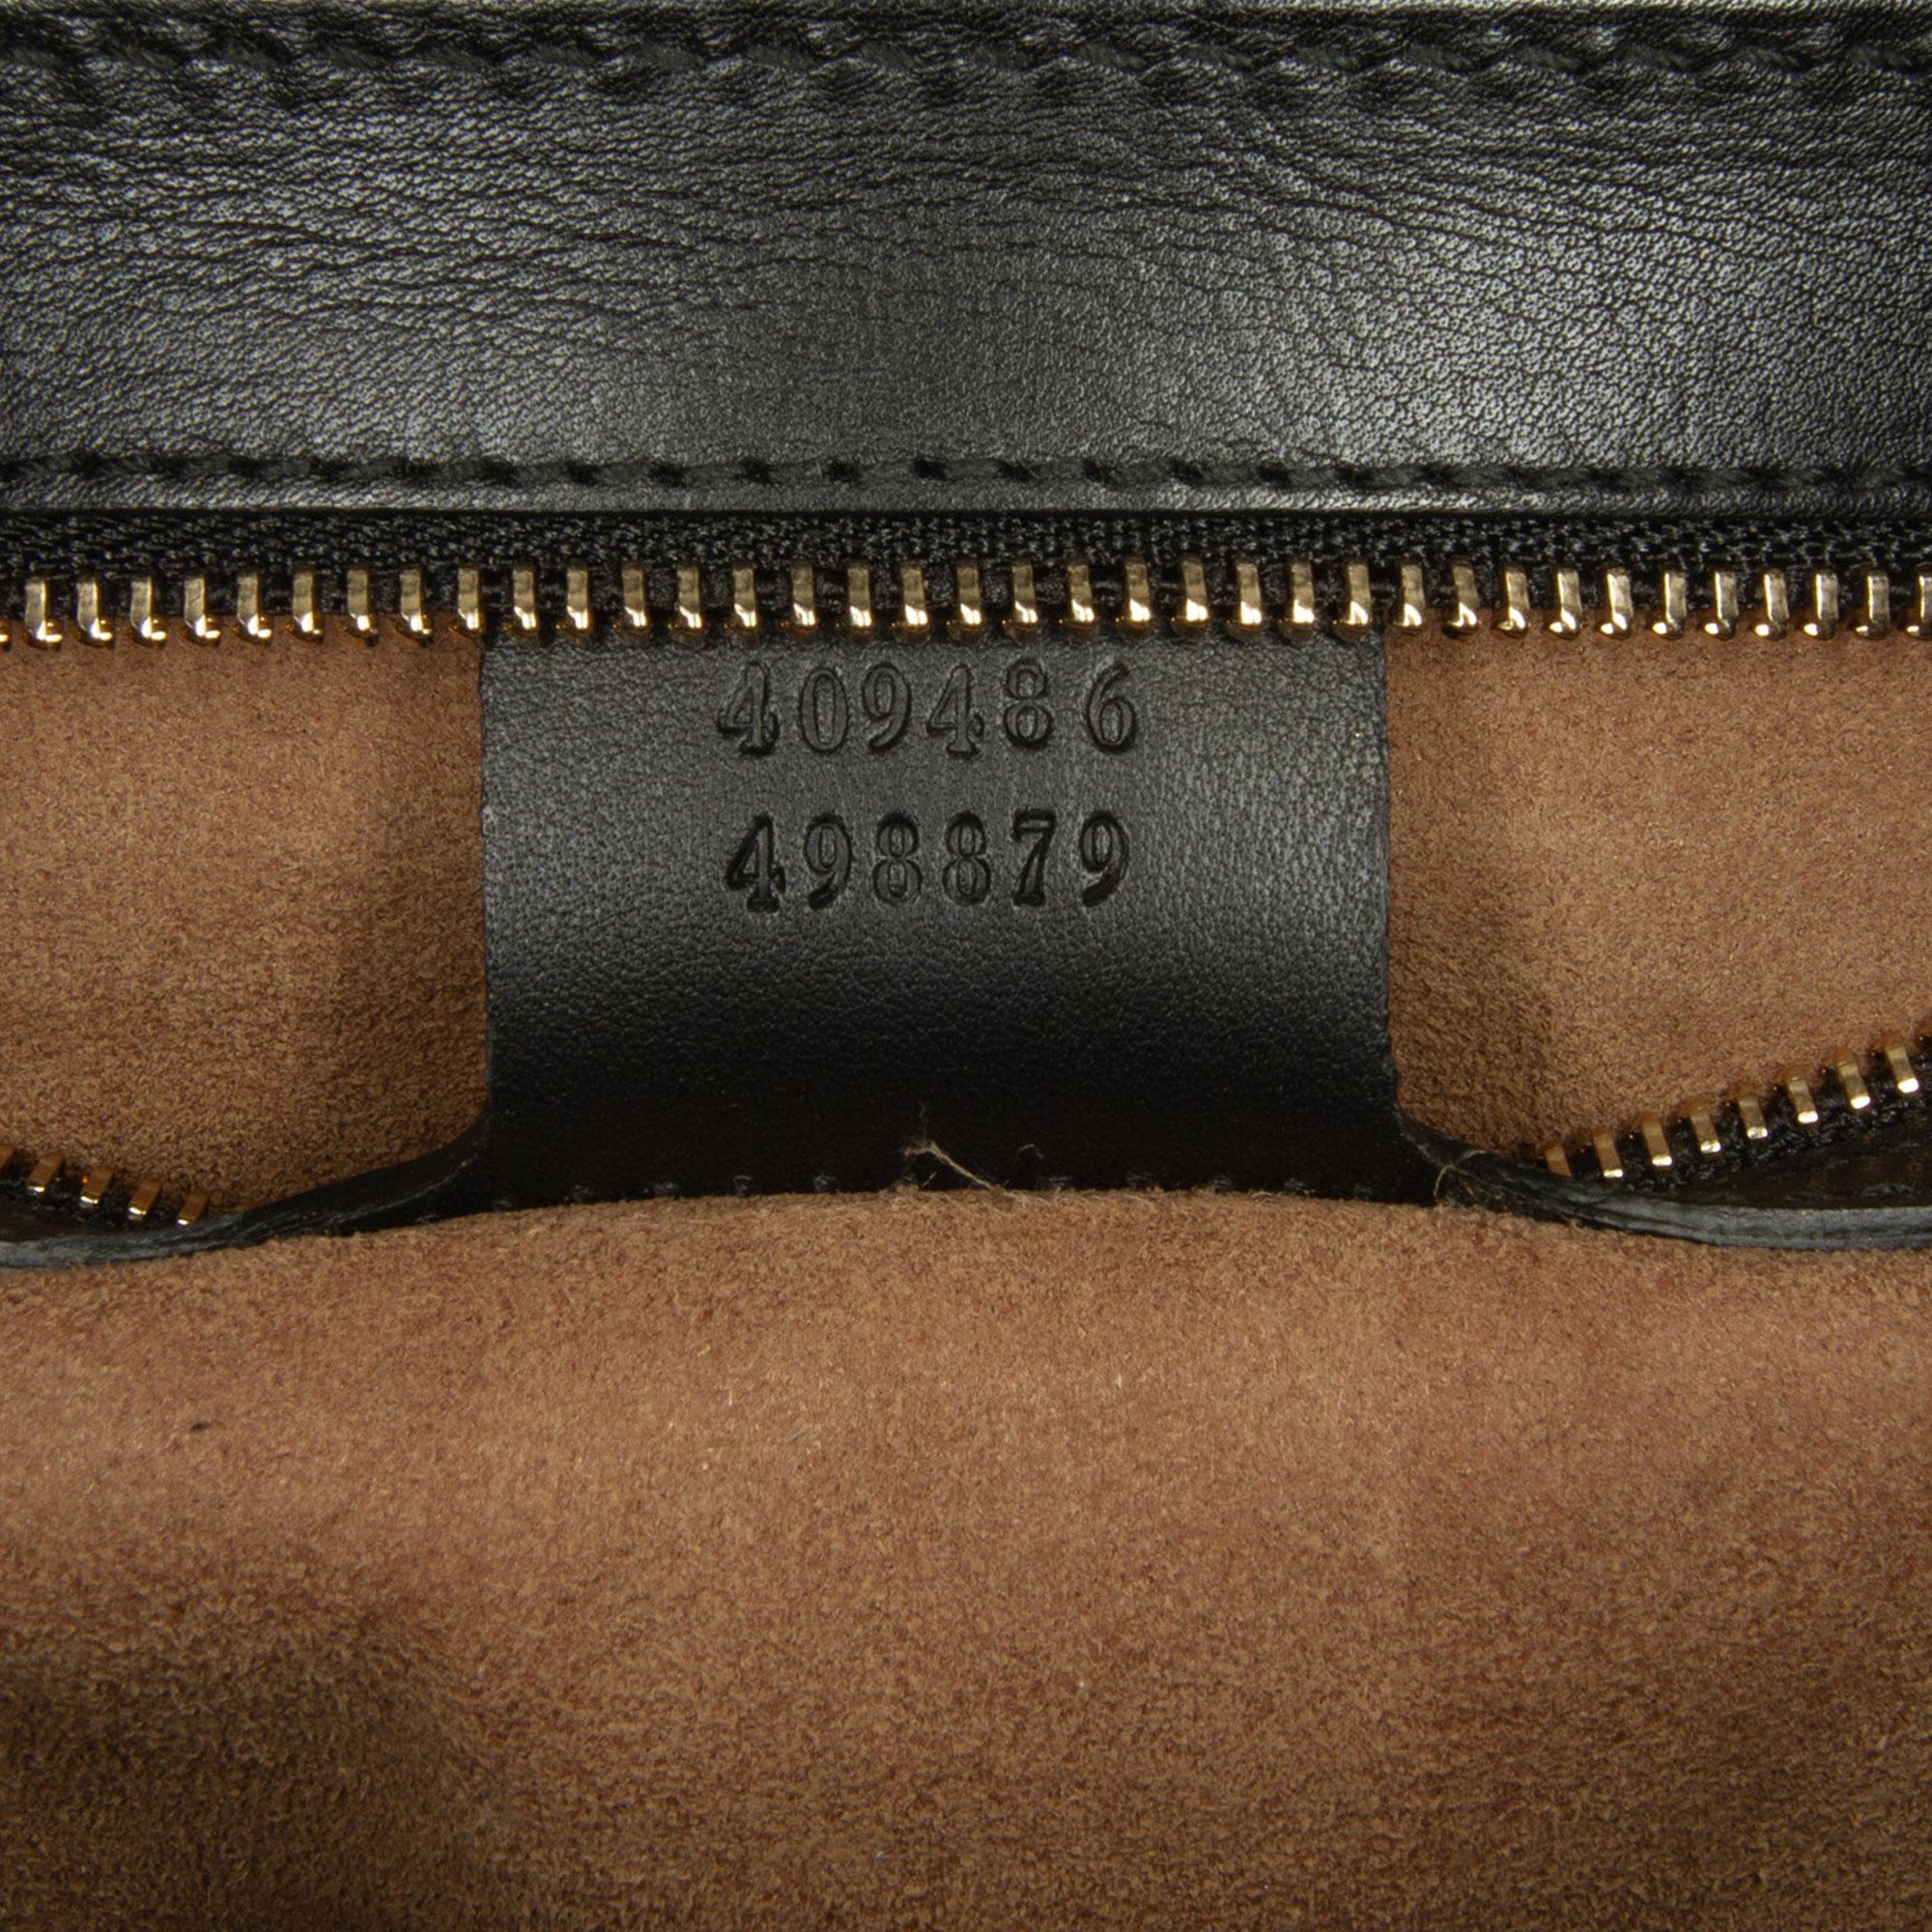 Gucci Beige/Black Medium GG Supreme Padlock Shoulder Bag